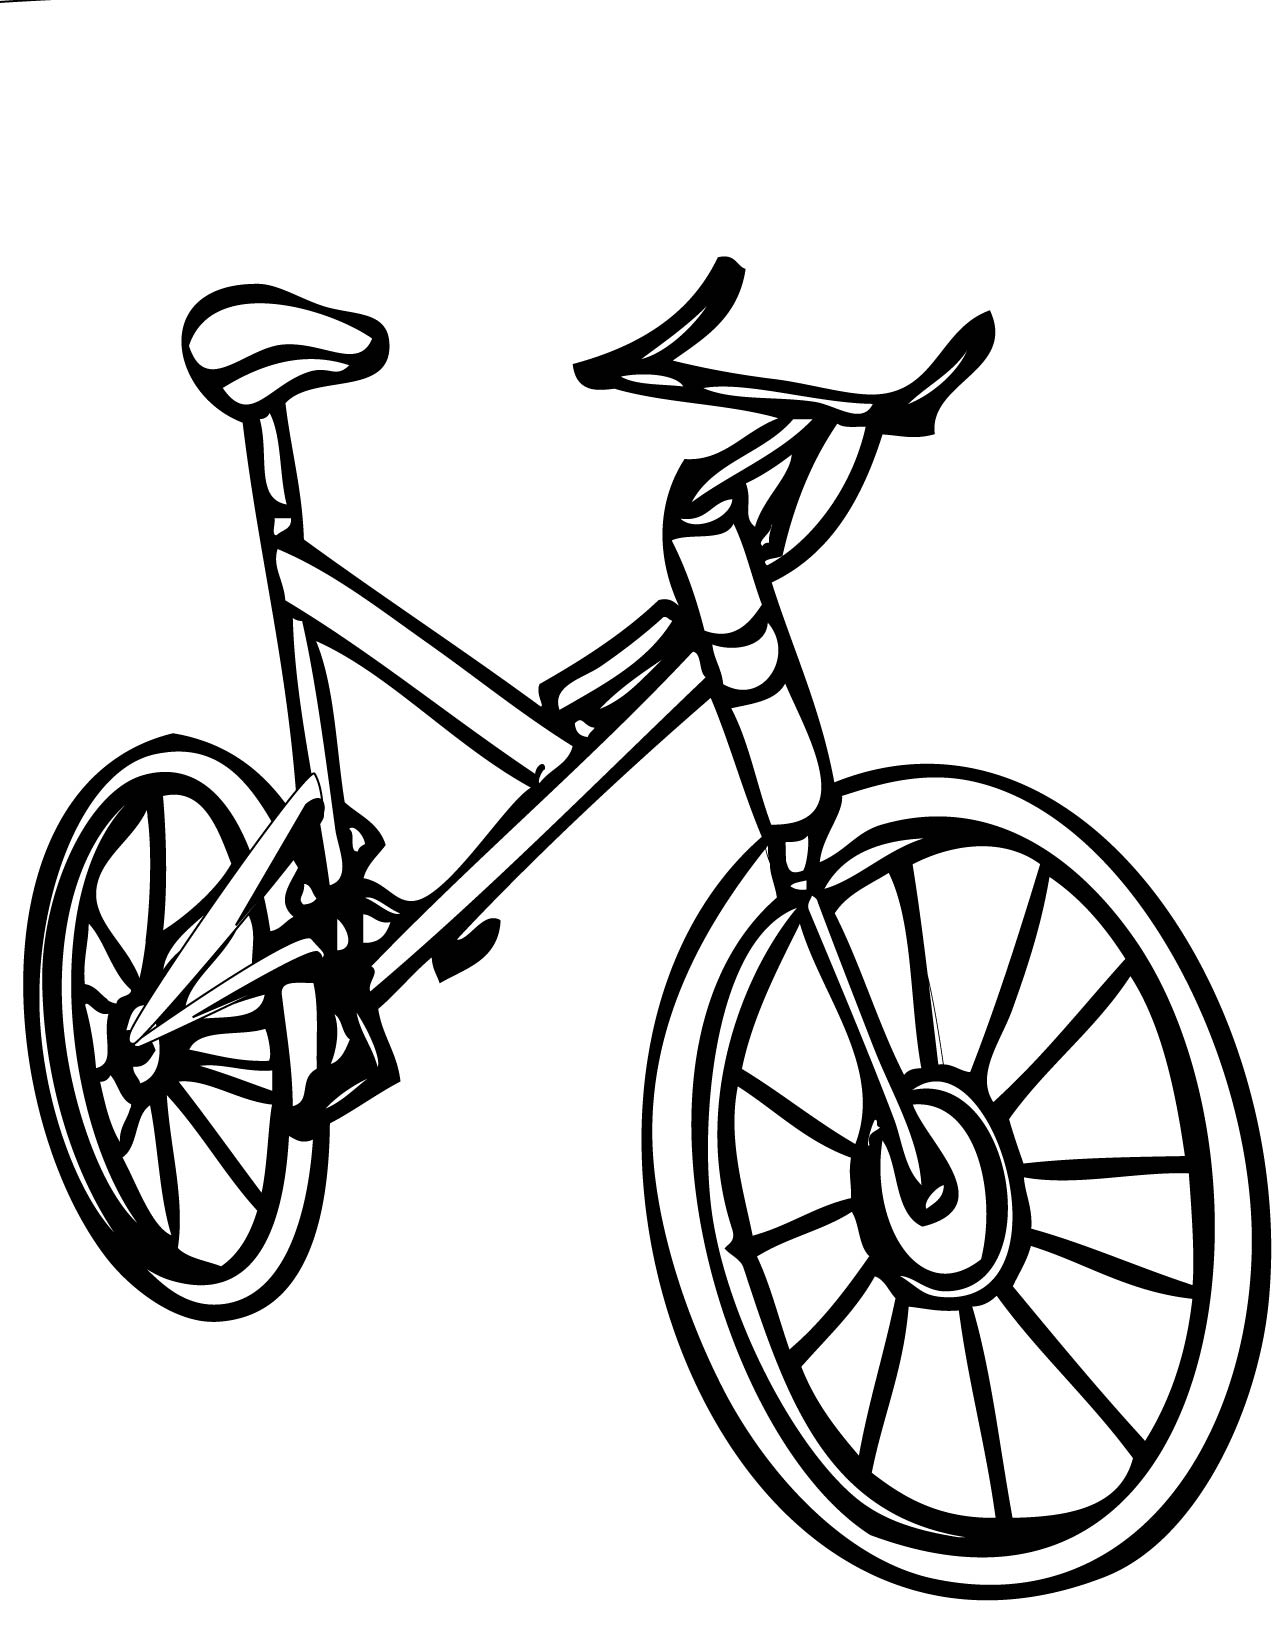 Раскраска велосипеда для детей мальчиков